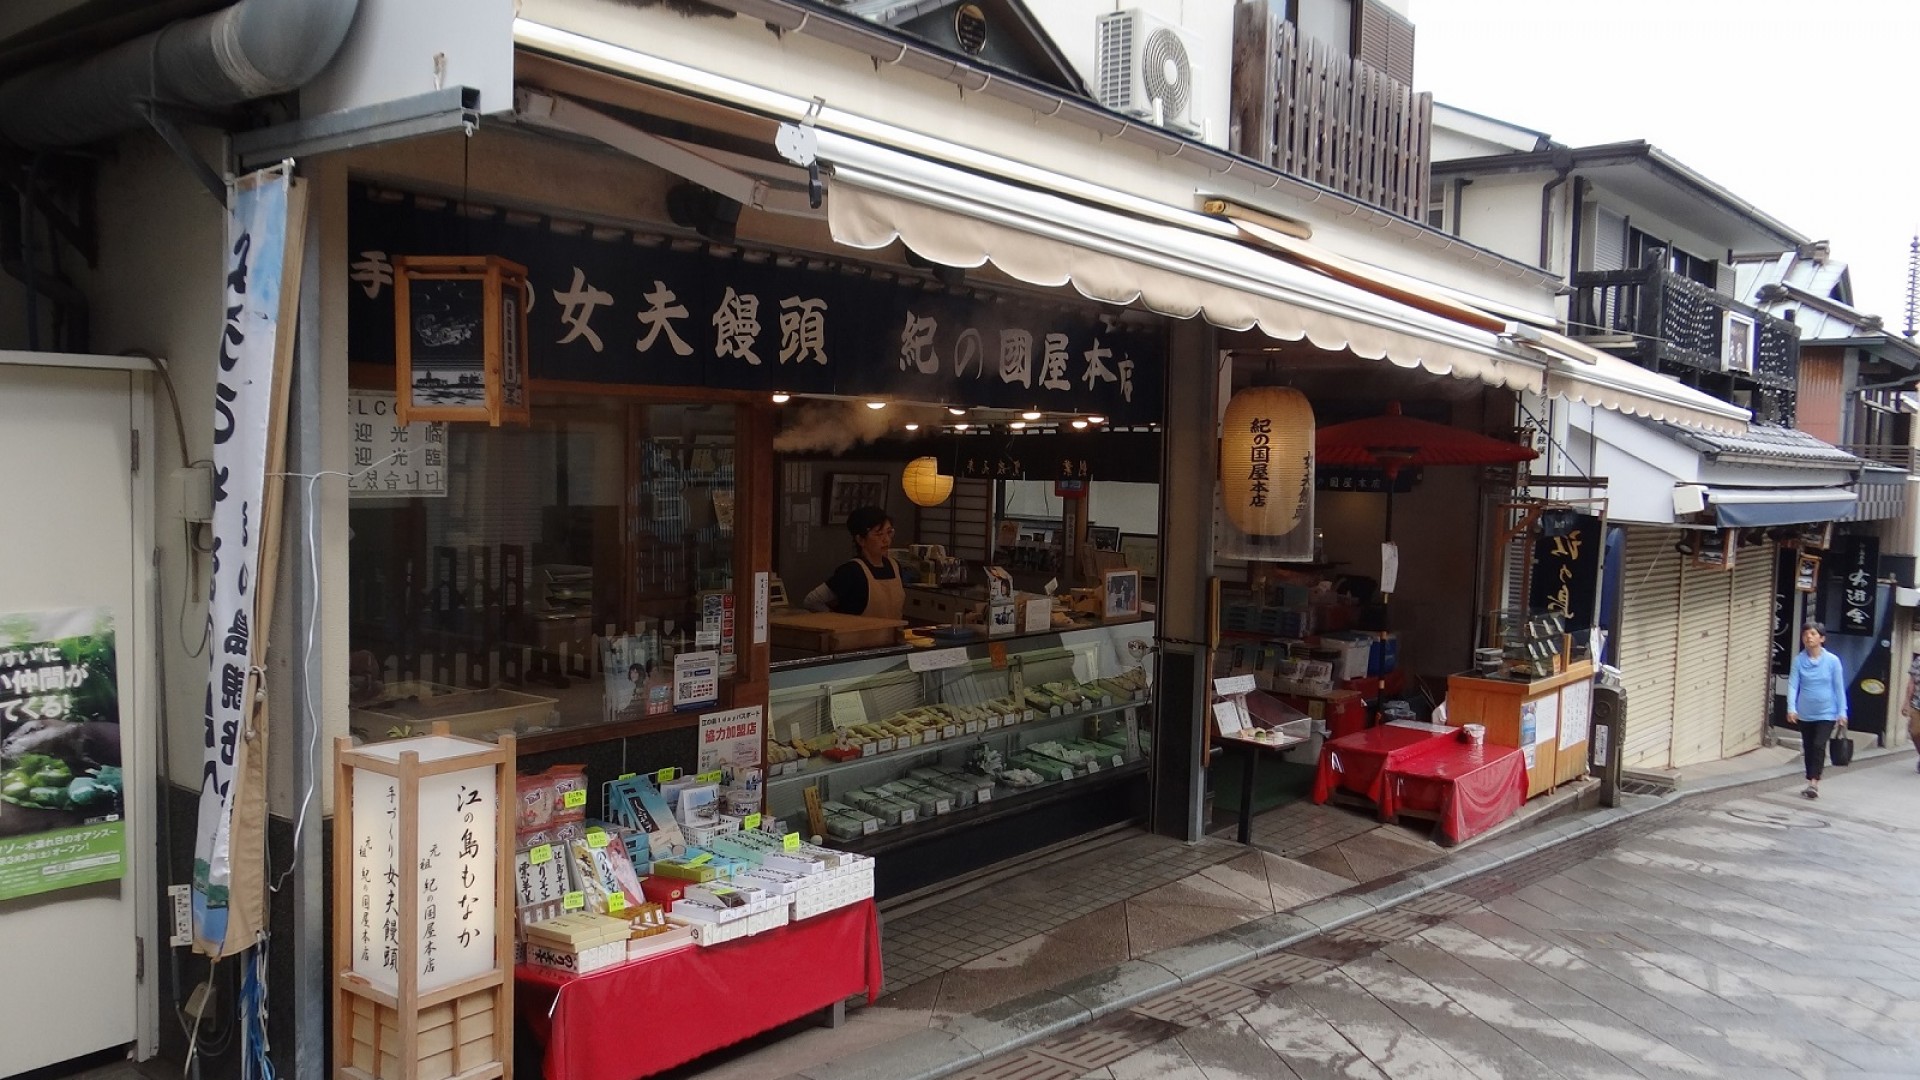 ร้านคิโนะคุนิยะสาขาหลัก (สถานที่ถ่ายทำภาพยนต์ "ฮิดะมะริ โนะ คะโนะโจะ")